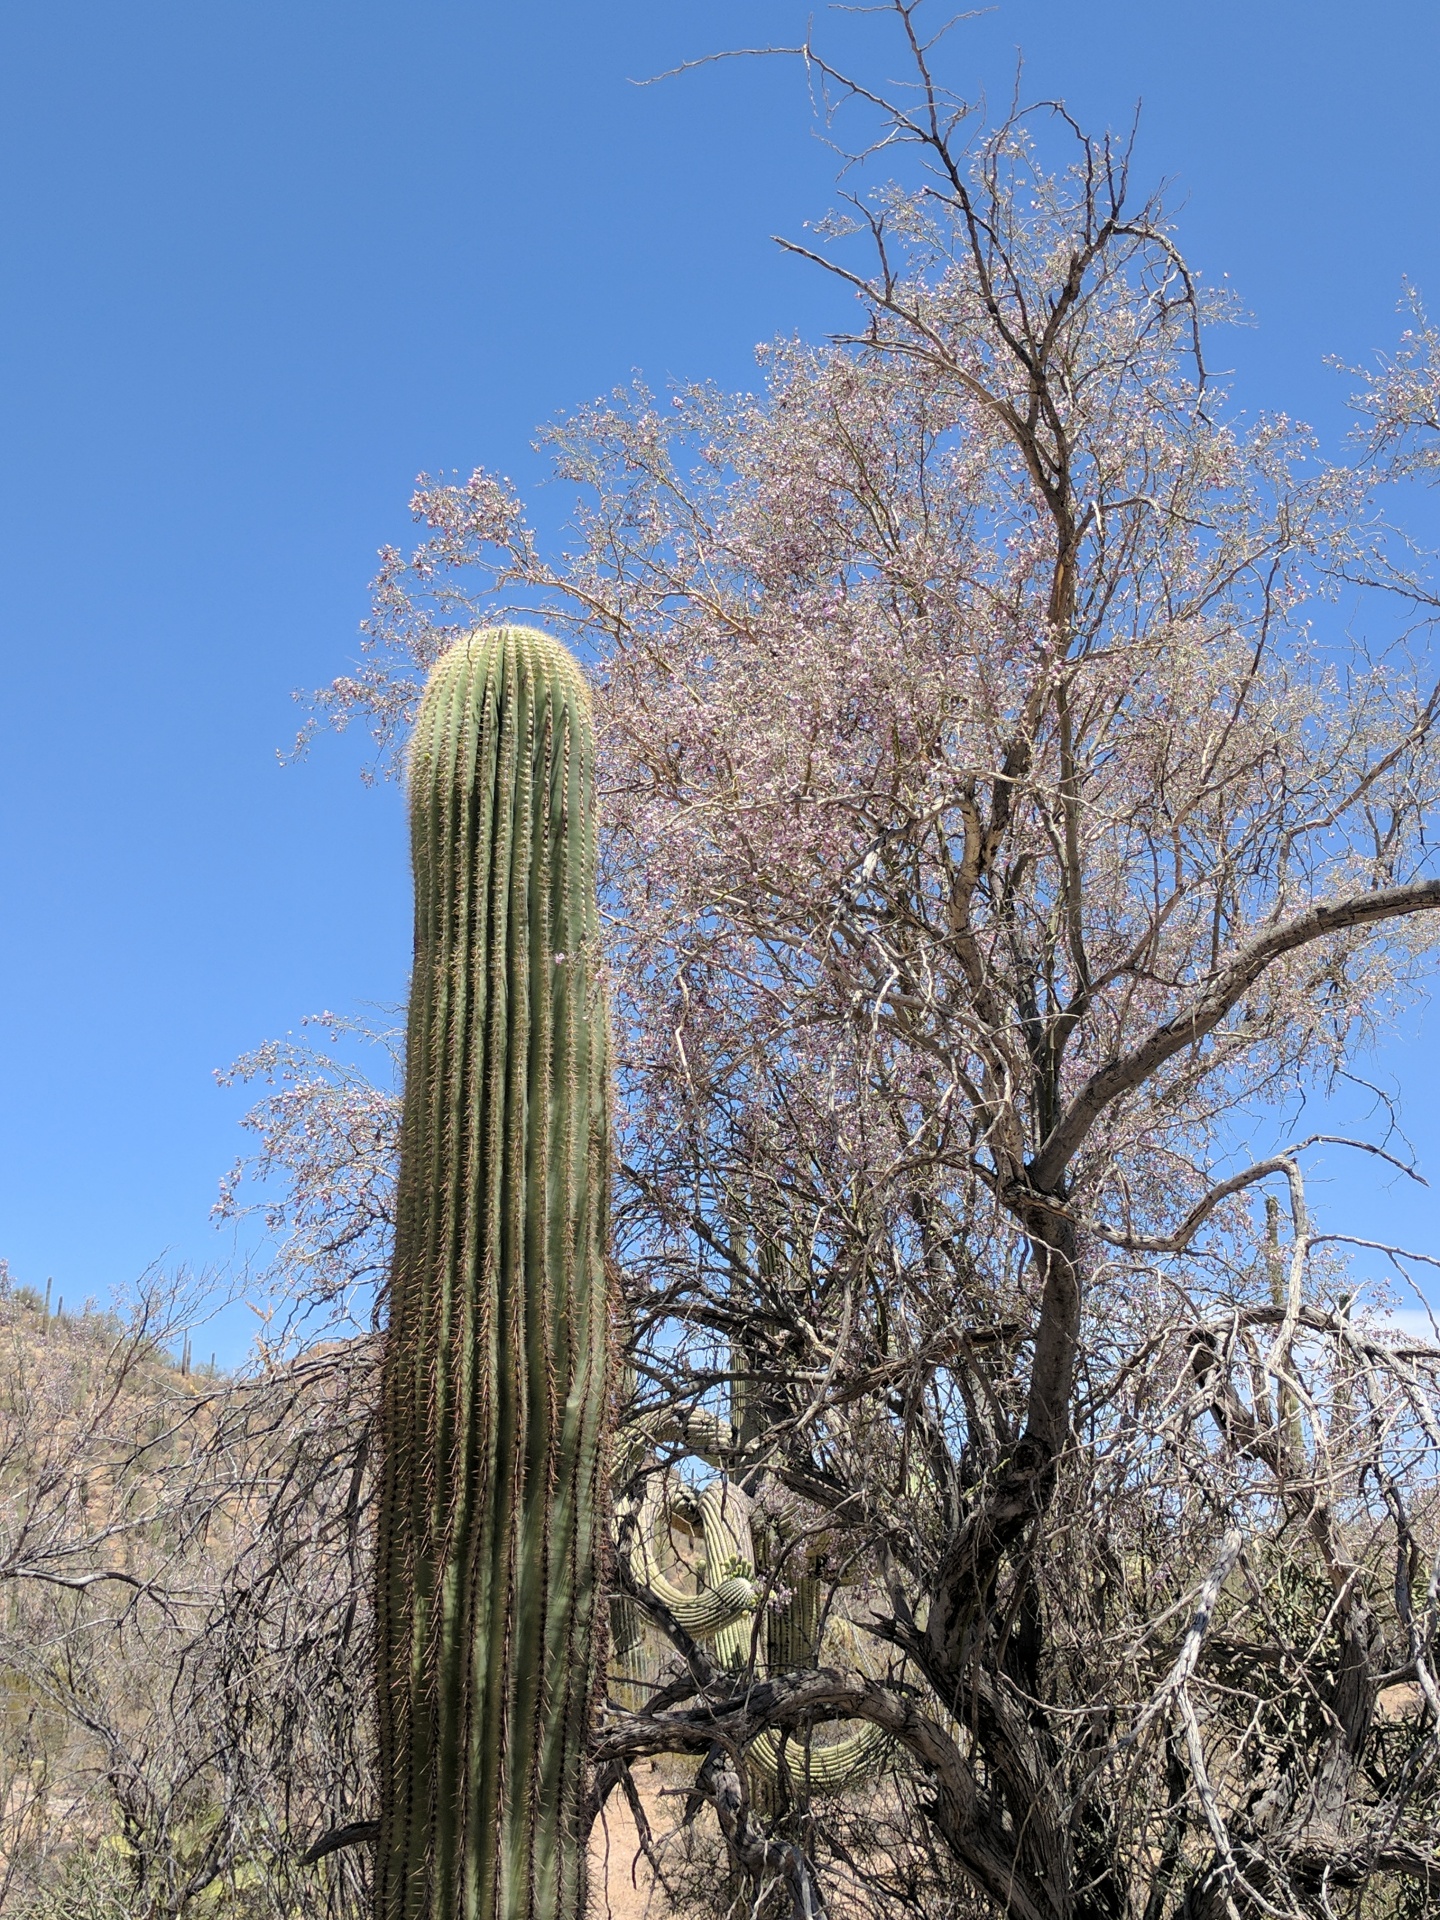 desert cacti cactus free photo